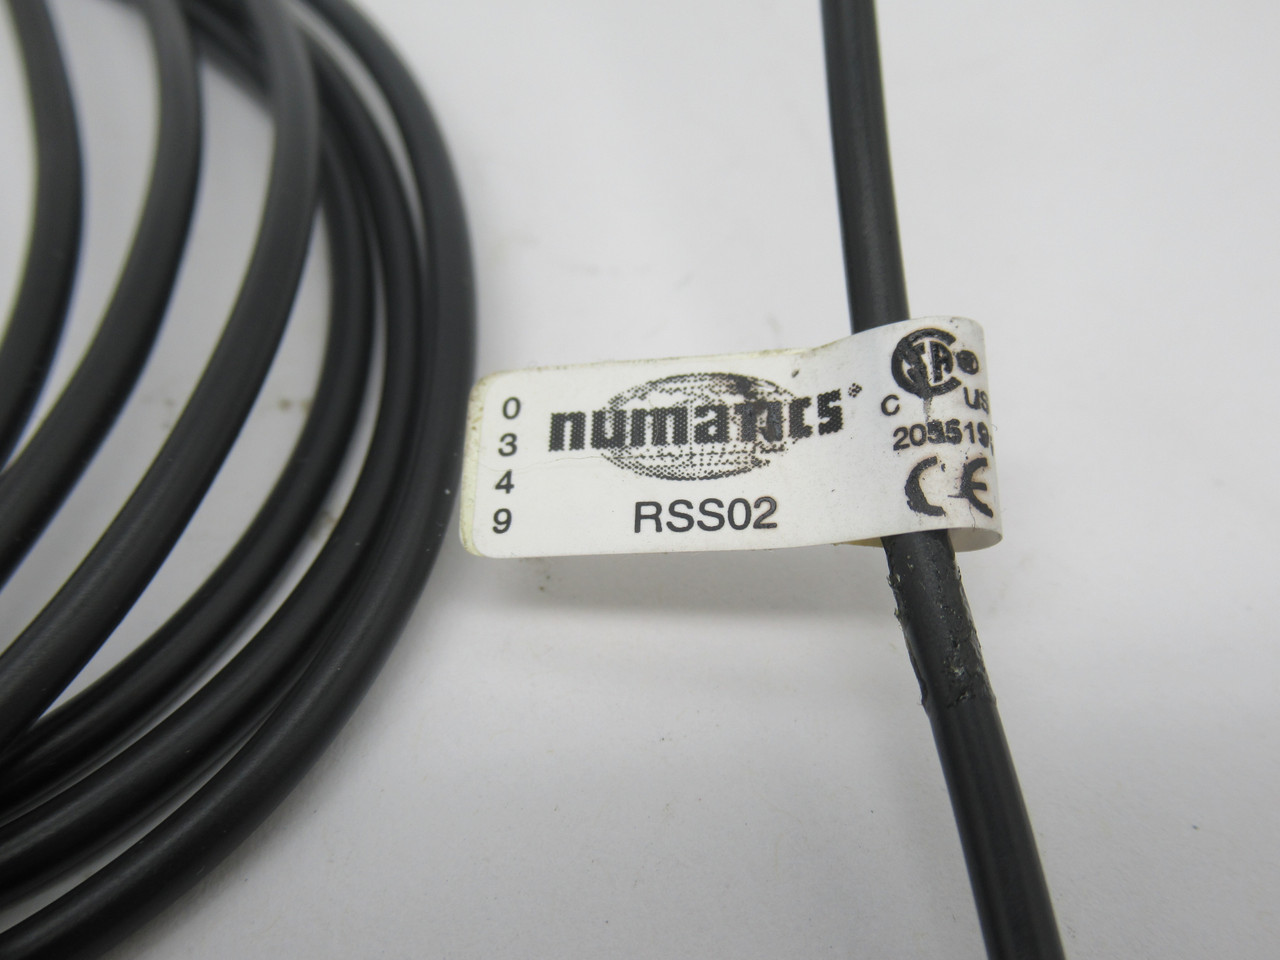 Numatics RSS02 Reed Switch 5-125VAC/DC 50mA 10W 3m Cable Length DMG'D CLIP NOP